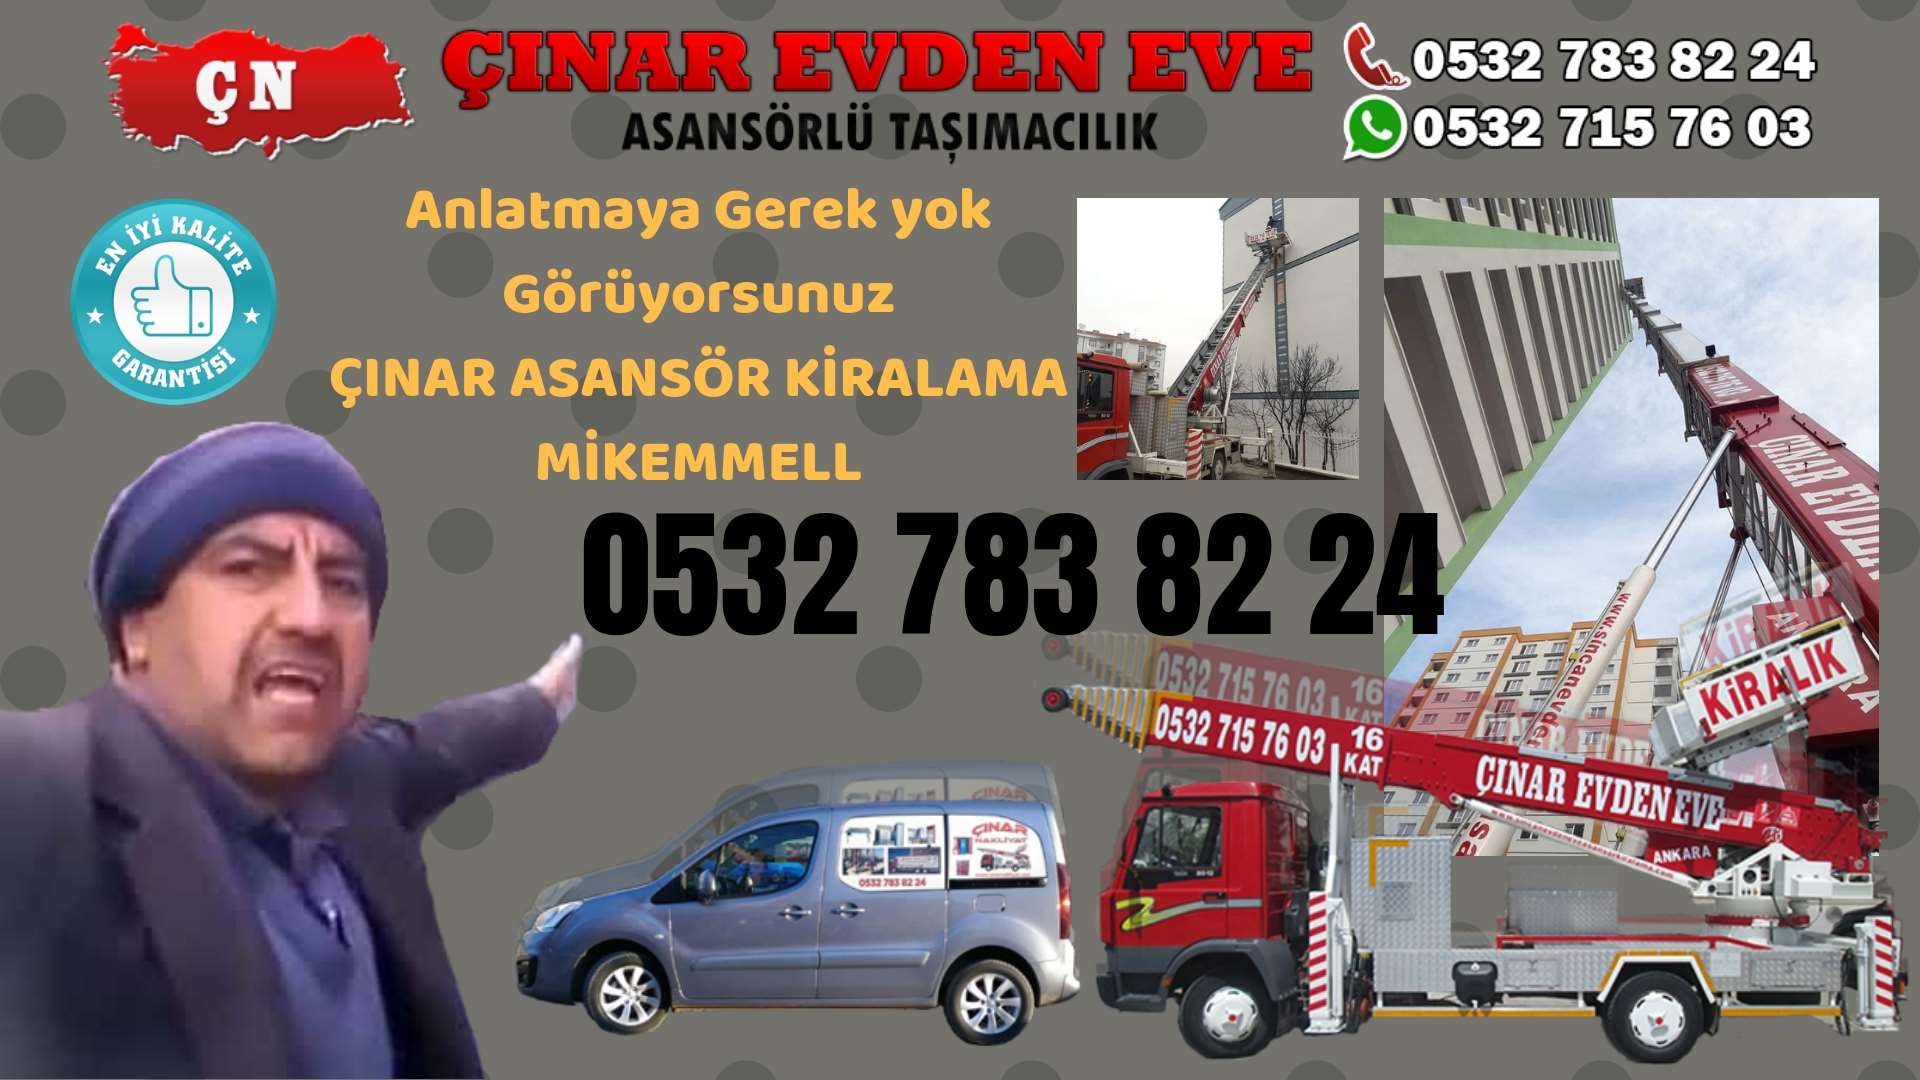 Ankara Etimesgut Ankara asansör kiralama hizmeti sizlere başta kalite ve maddi acıdan tasarruf 0532 715 76 03